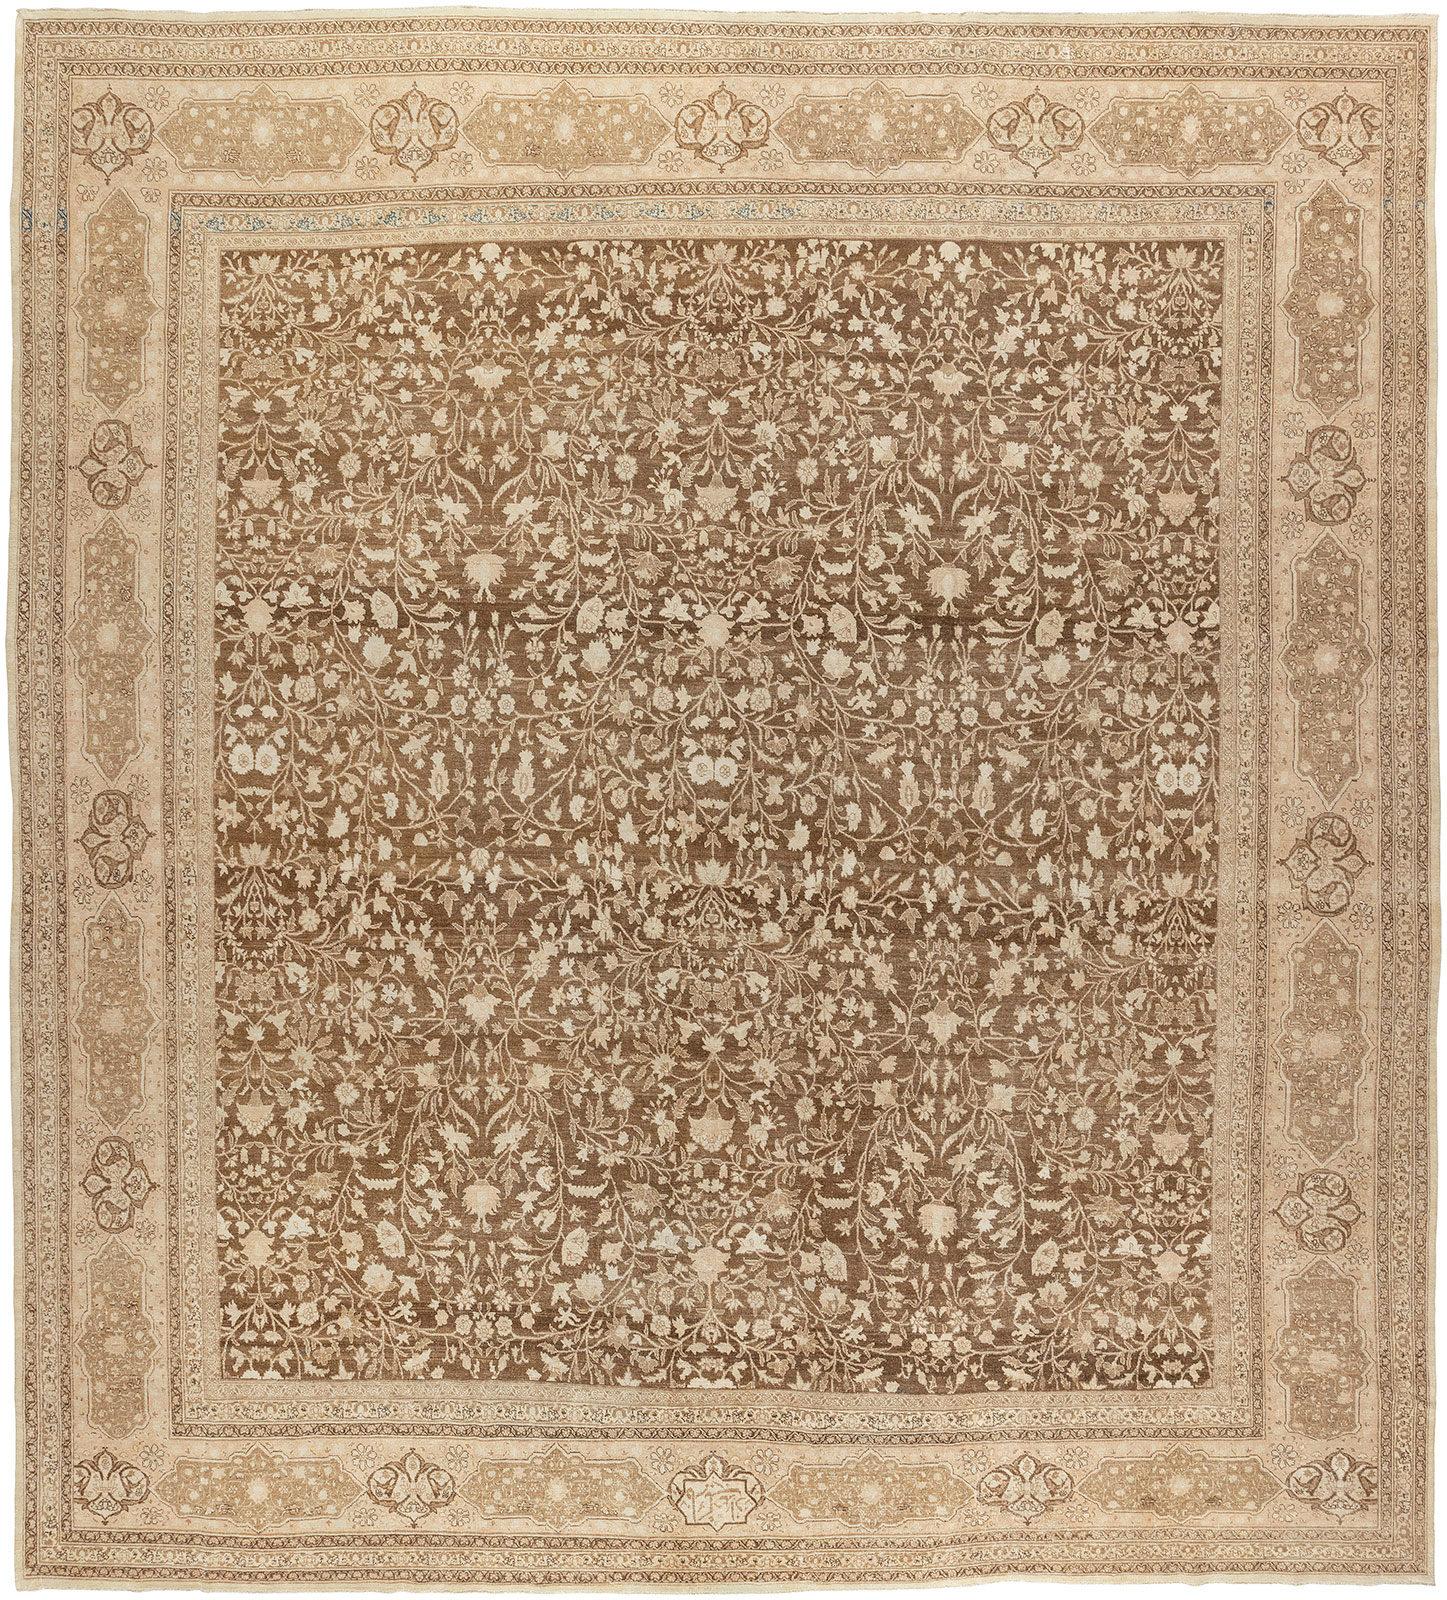 Tabriz persan authentique du début du XXe siècle, de grande taille et de forme carrée, présentant un motif floral sur toute sa surface en brun et ivoire

circa 1920, mesures : 13' x 14'4